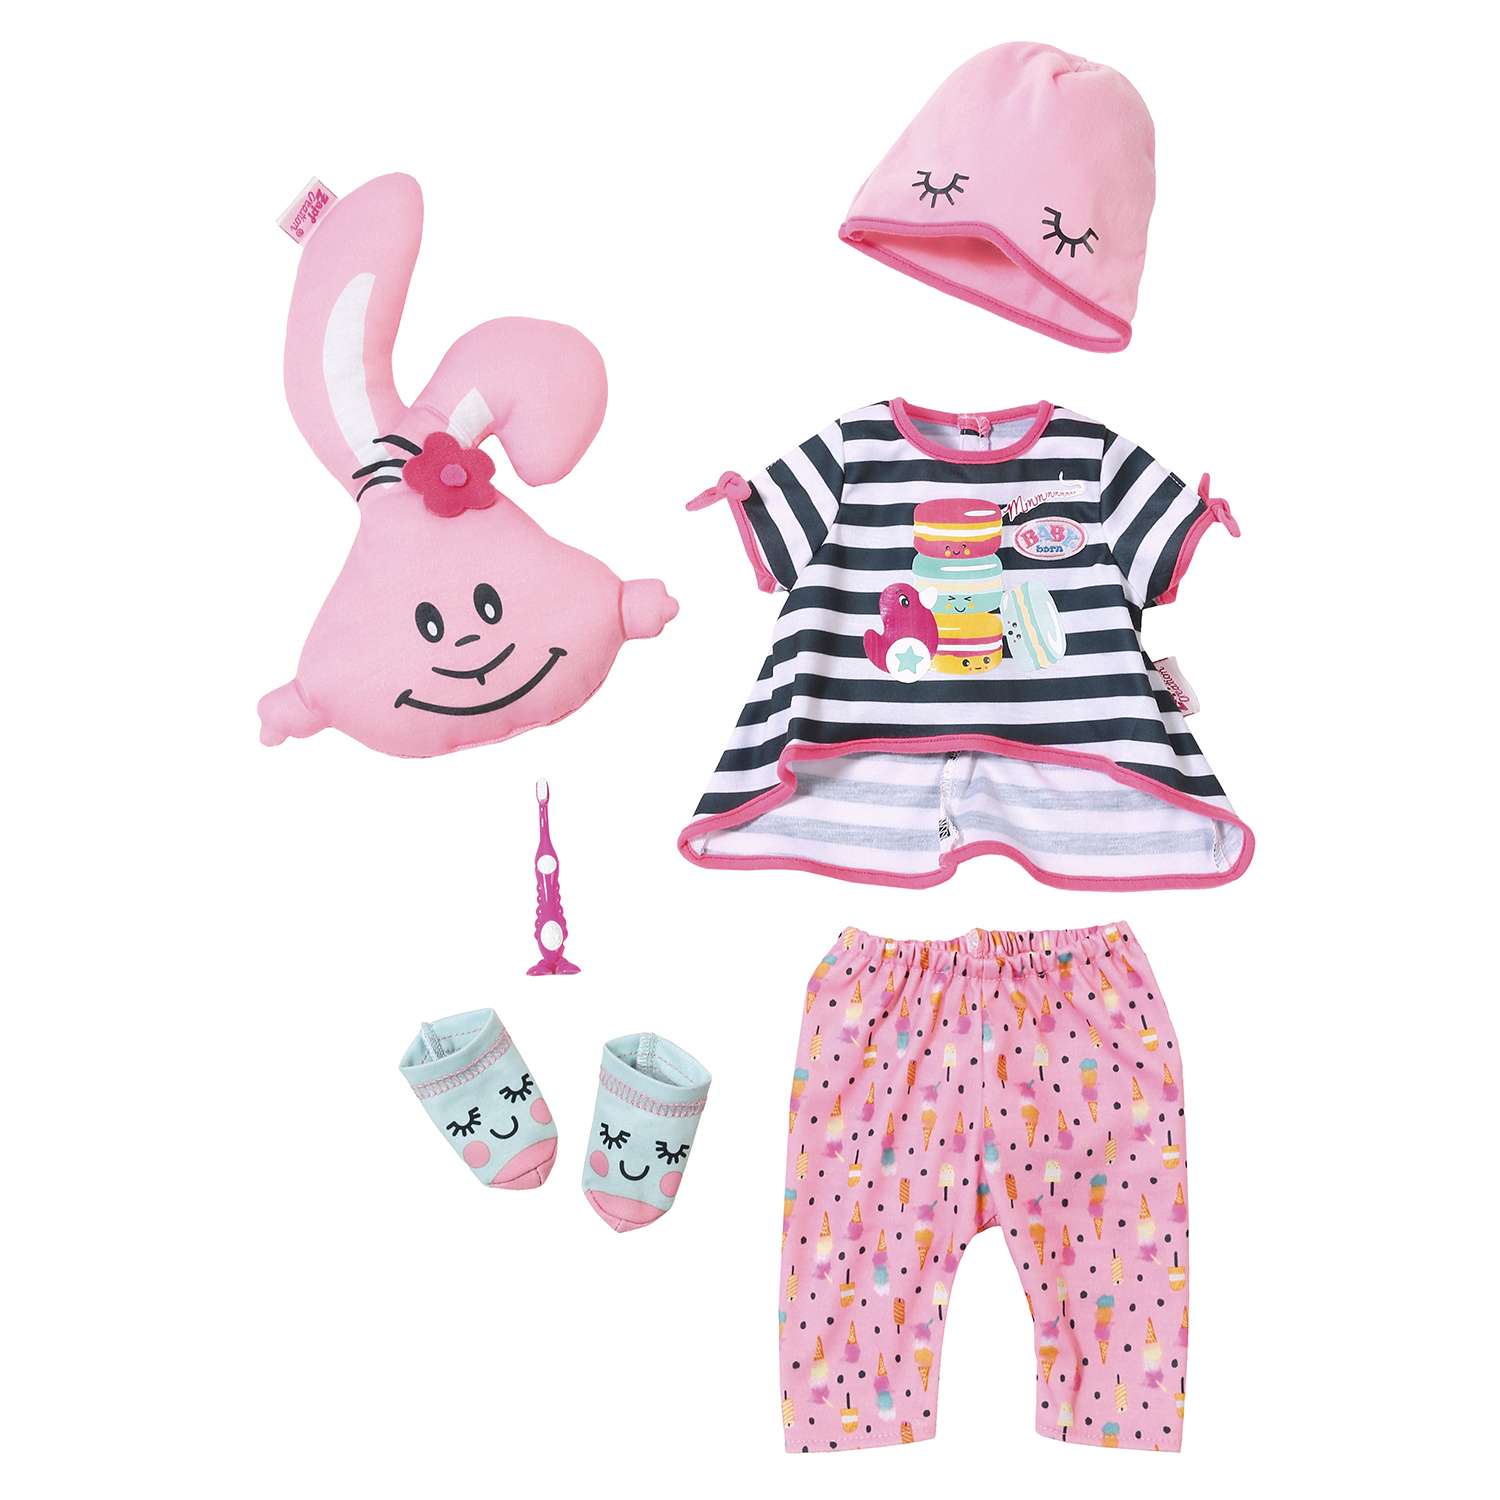 Набор одежды для куклы Zapf Creation Baby born Пижамная вечеринка 824-627 824-627 - фото 1